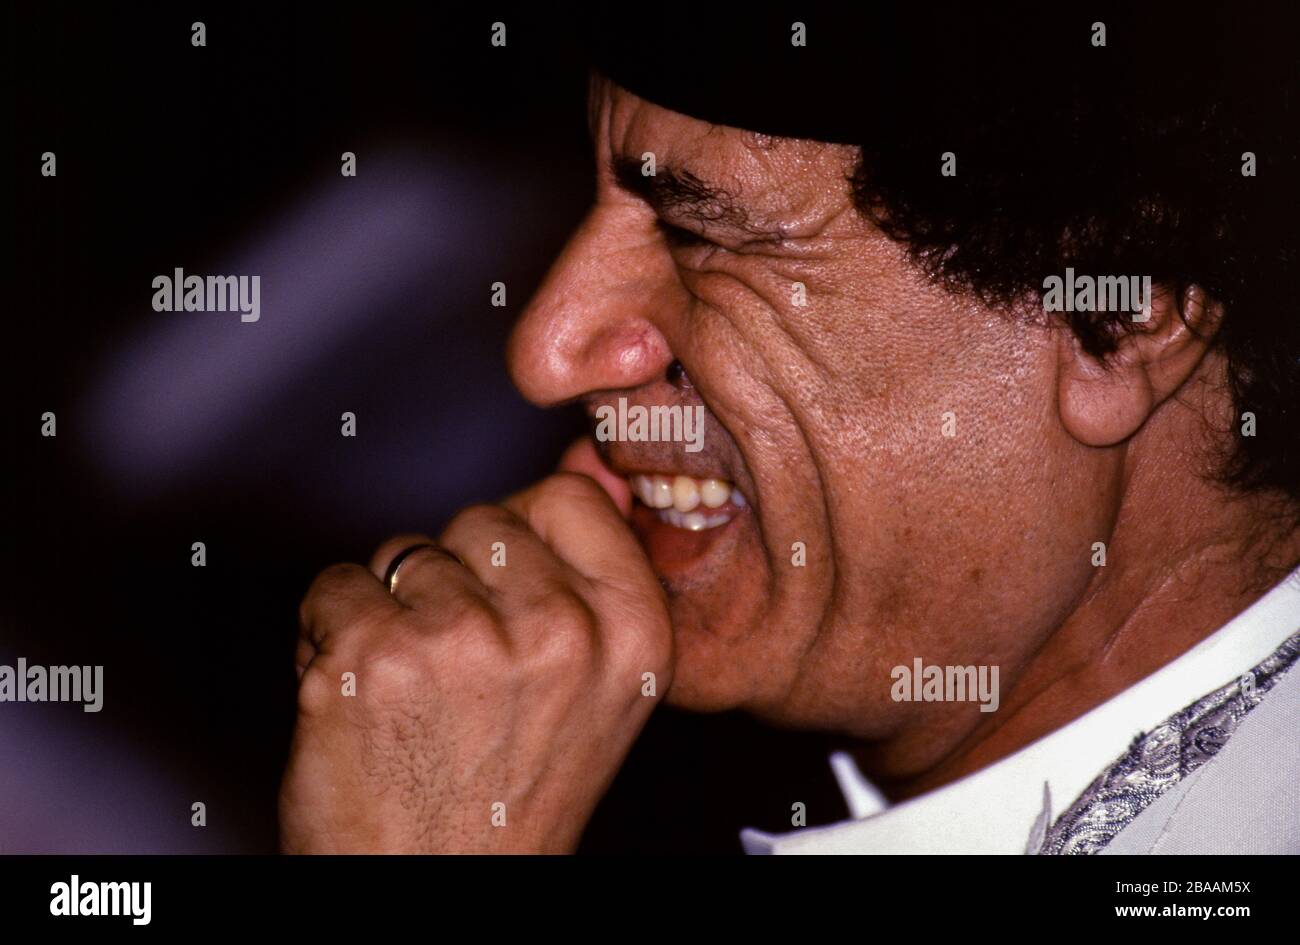 Le Caire, Egypte - 21-23 juin 1996 - le Président libyen Mouammar Kadhafi au Sommet arabe de la capitale égyptienne, où les dirigeants arabes se sont réunis pour examiner l'évolution de la région, et pour relancer, renforcer et intensifier l'action arabe conjointe. Banque D'Images